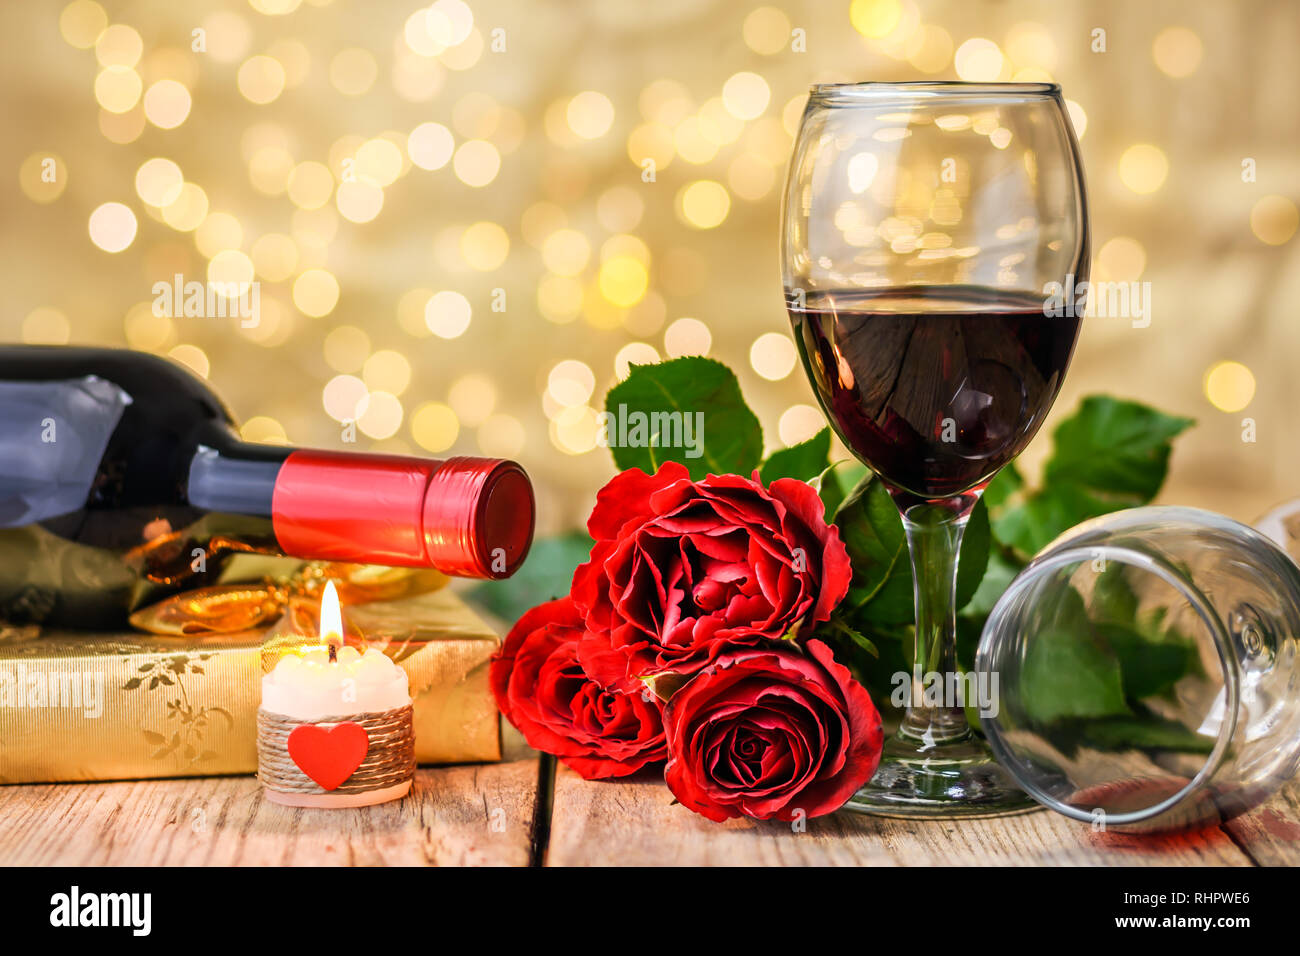 Concepto del Día de San Valentín. Dos copas de vino, rosas rojas, caja de  regalo, una botella de vino y velas encendidas sobre una tabla de madera  rústica en frente de un